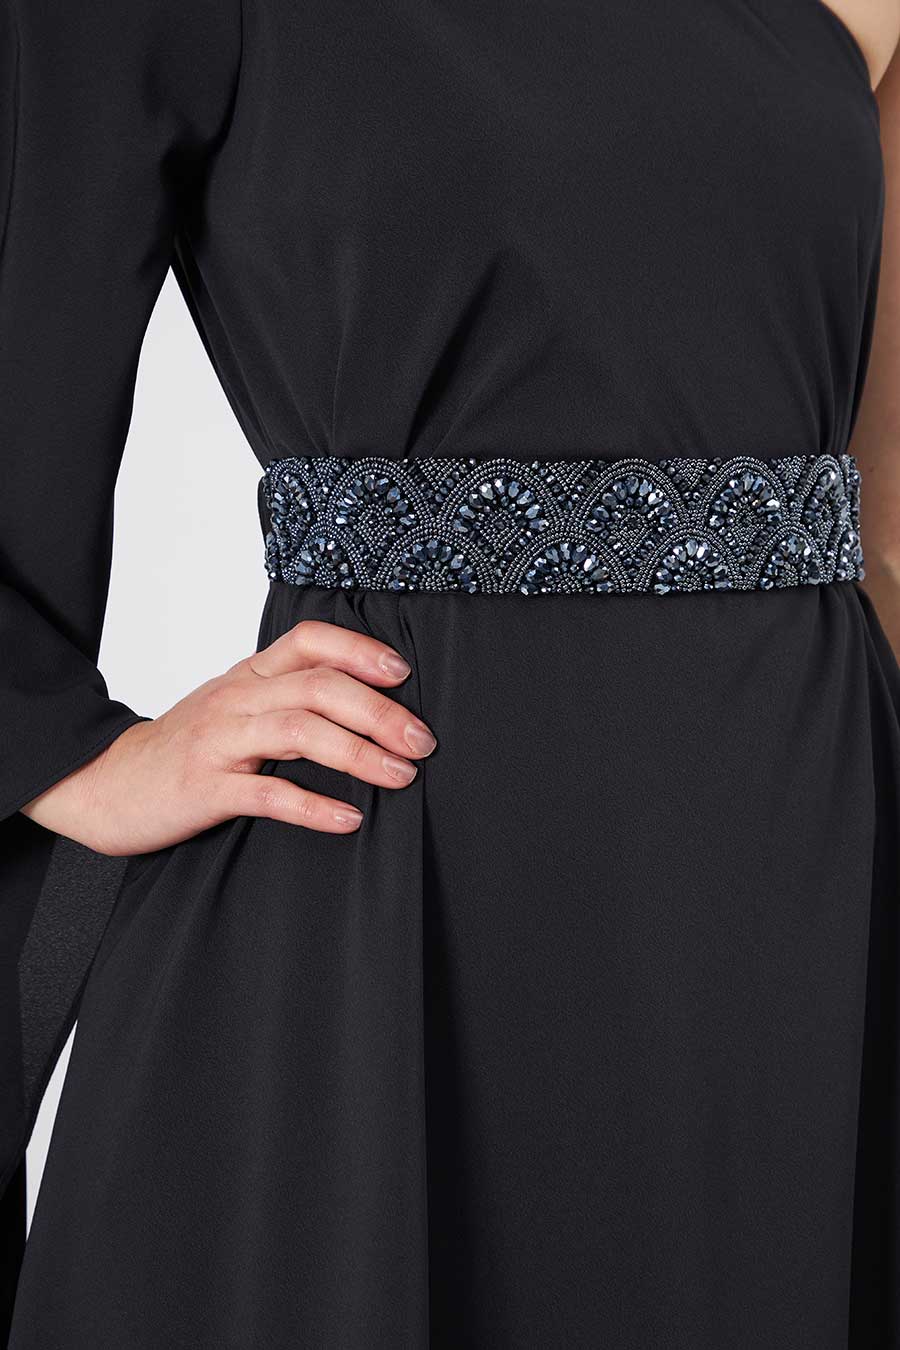 Black One-Shoulder Dress With Emebllished Belt